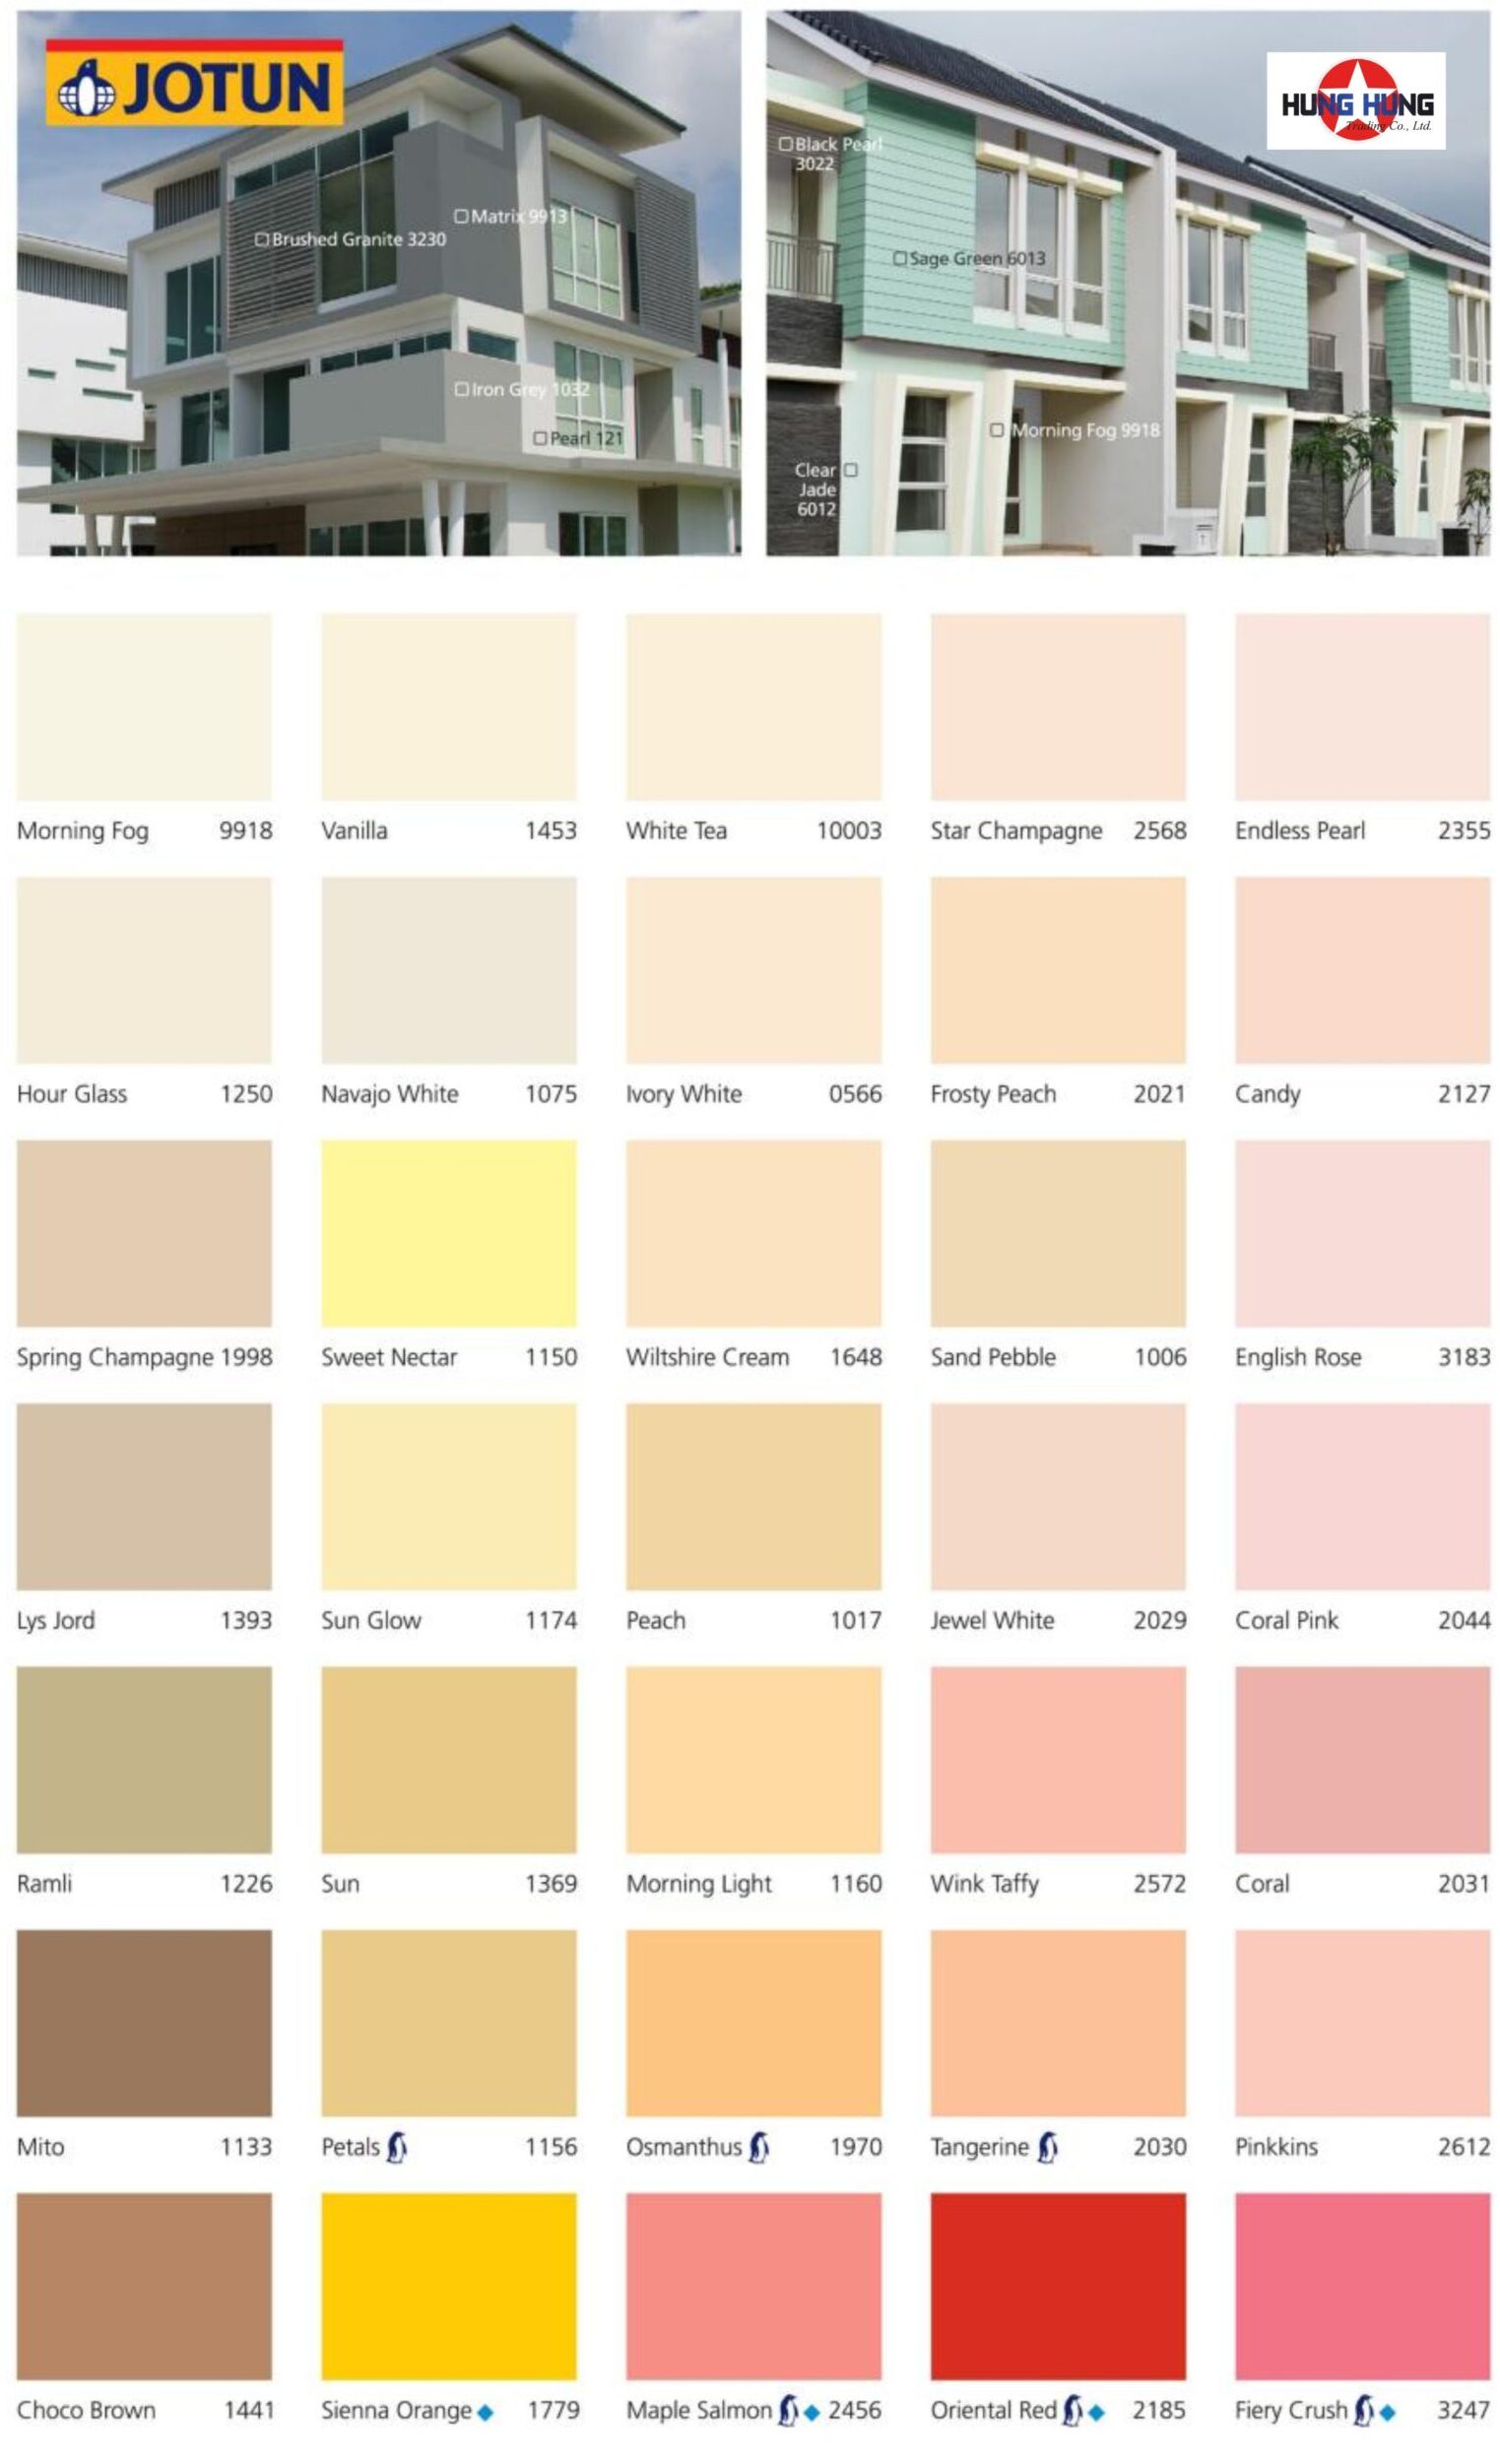 Bảng màu sơn Jotun essence là giải pháp tuyệt vời cho những ai đang tìm kiếm một bảng màu sơn đẹp mắt và chất lượng cao. Với nhiều màu sắc đa dạng và bắt mắt, bạn sẽ dễ dàng chọn được màu sắc ưng ý cho ngôi nhà của mình.